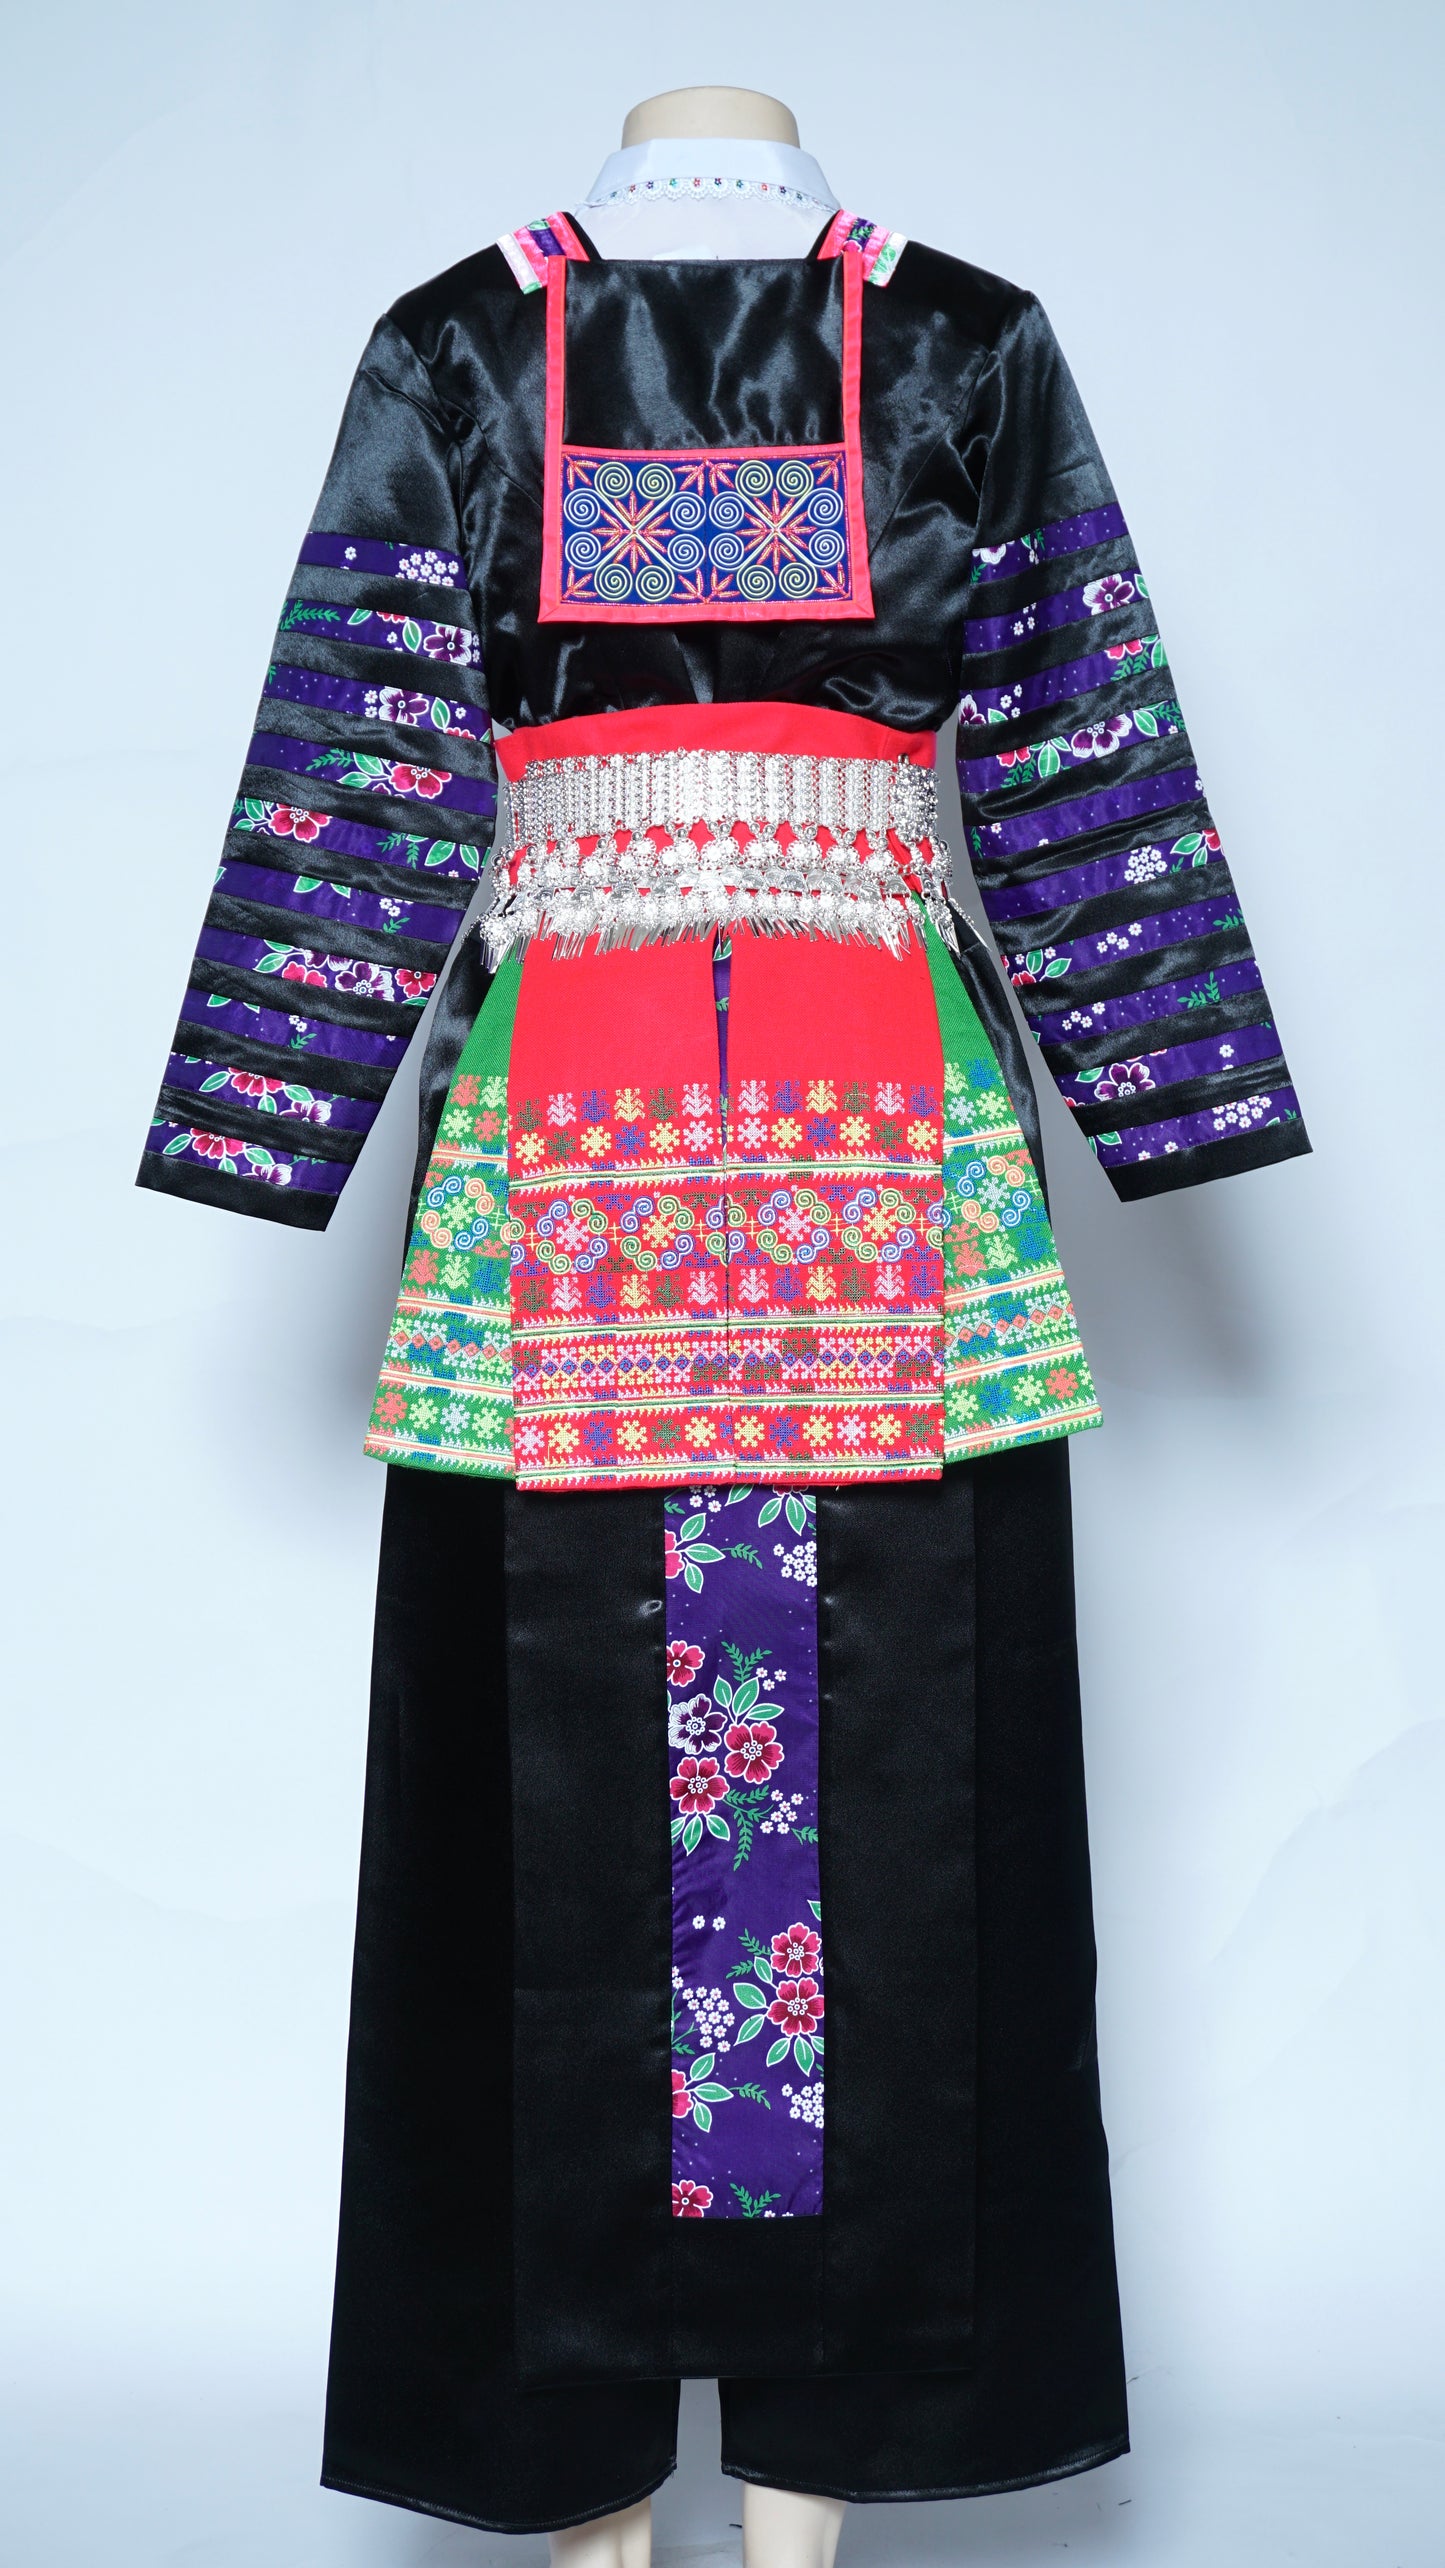 Hmong Txaij Purple Floral Outfit (40")